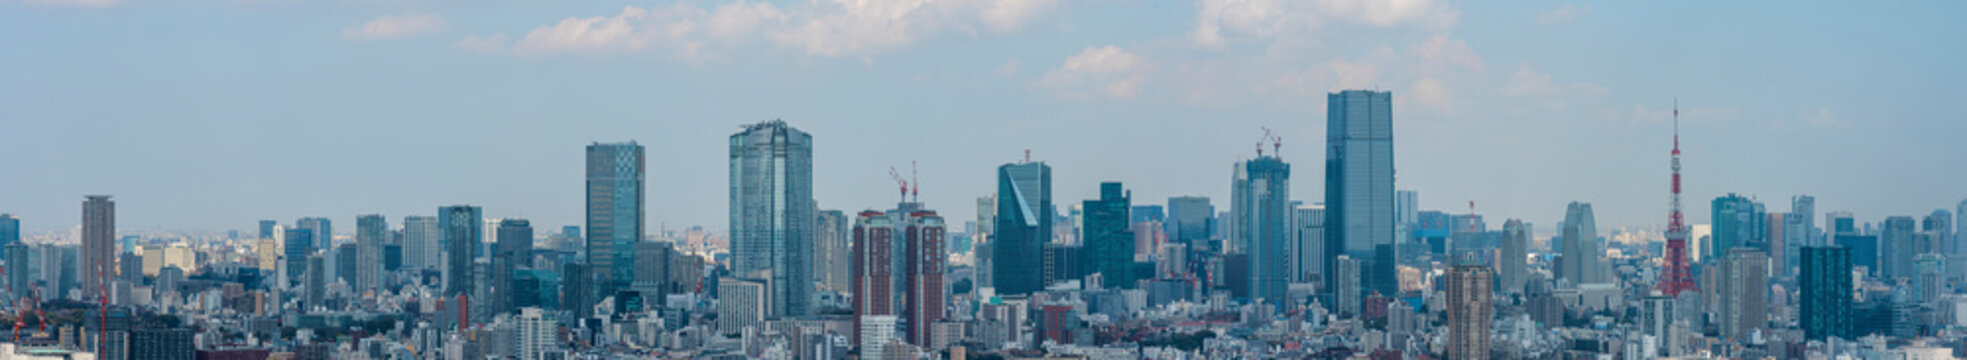 東京のパノラマ風景